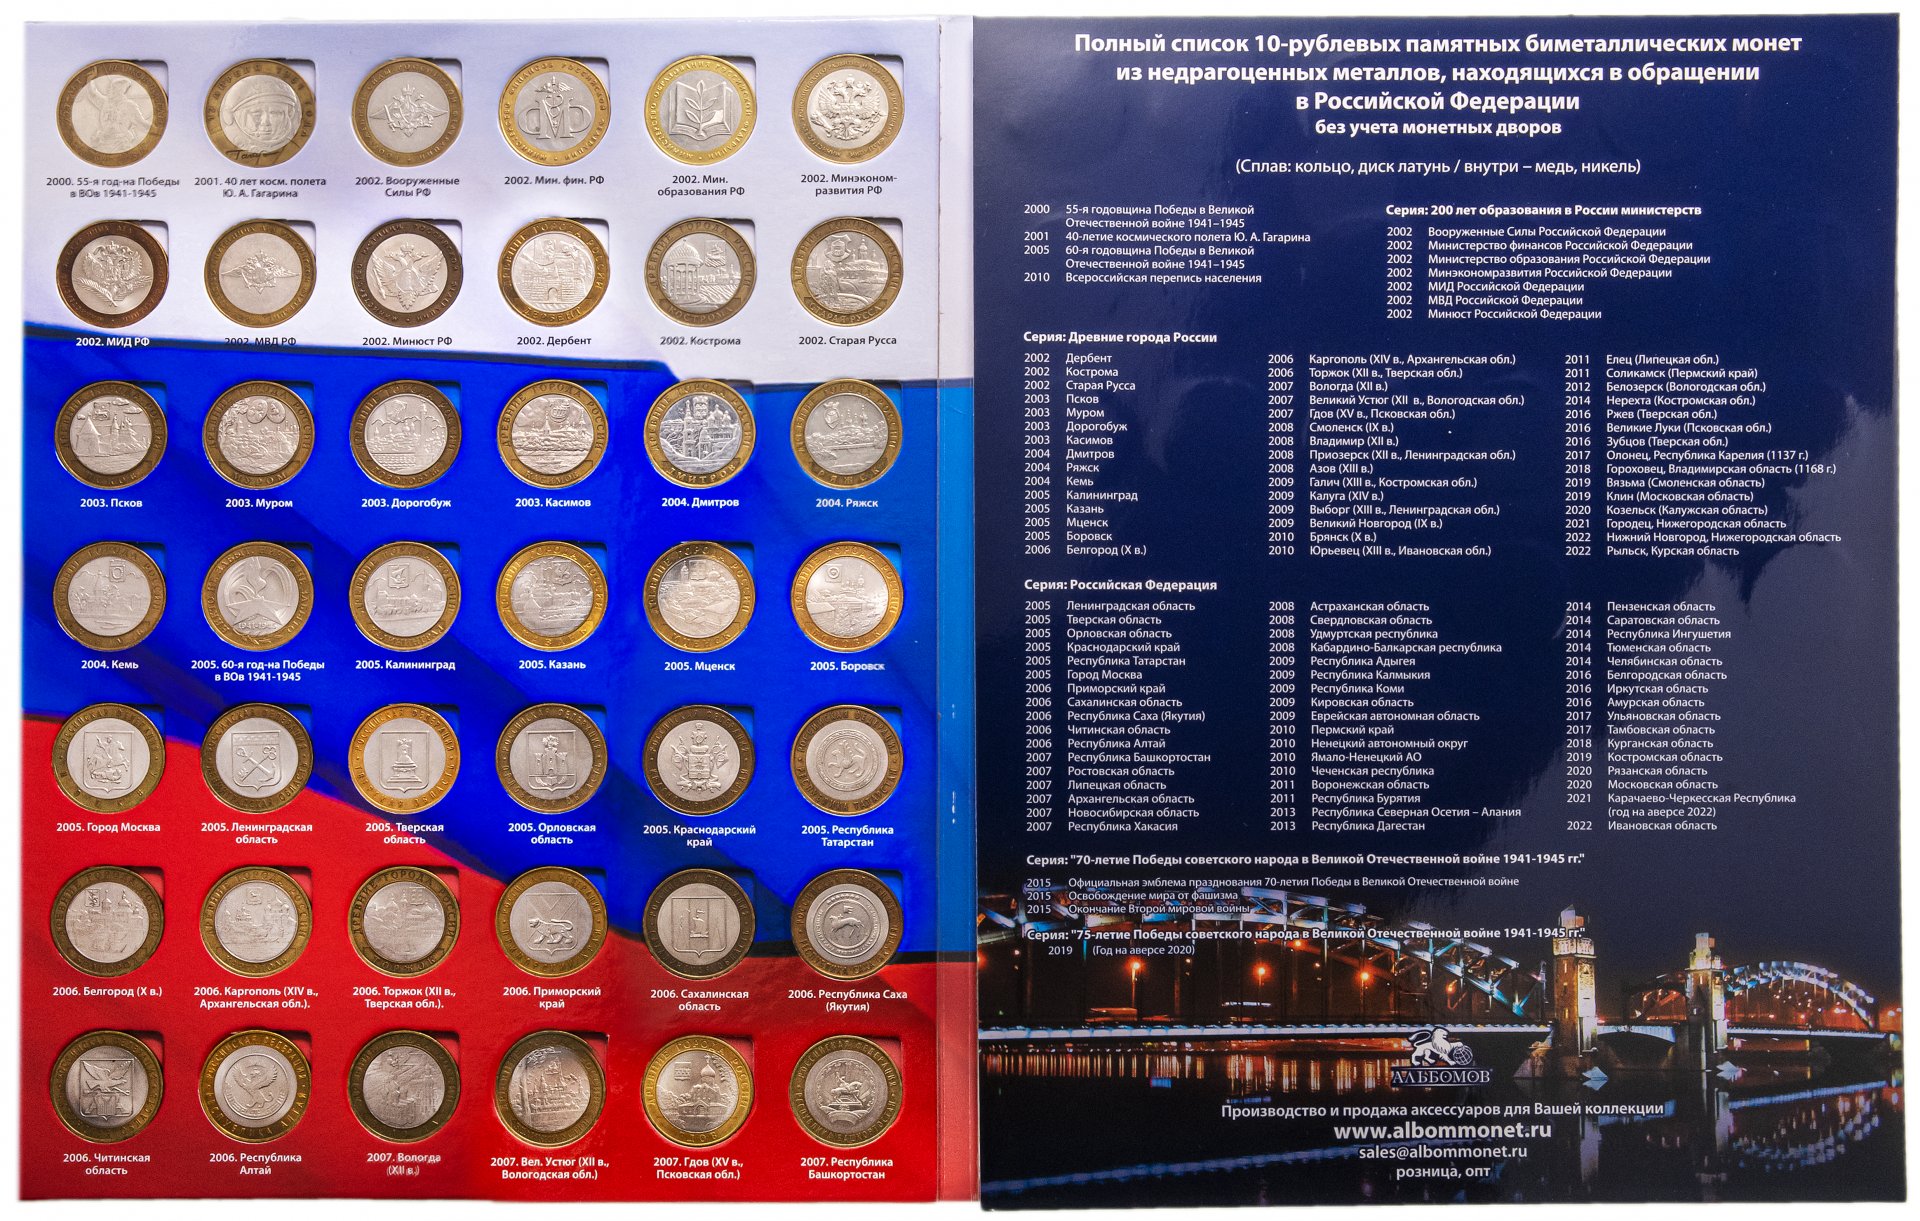 10 рублей биметалл список всех монет. Список биметаллических 10 рублевых монет таблица. Монеты Биметалл 10 рублей 2015. Полный набор биметаллических монет. Памятные монеты из недрагоценных металлов.